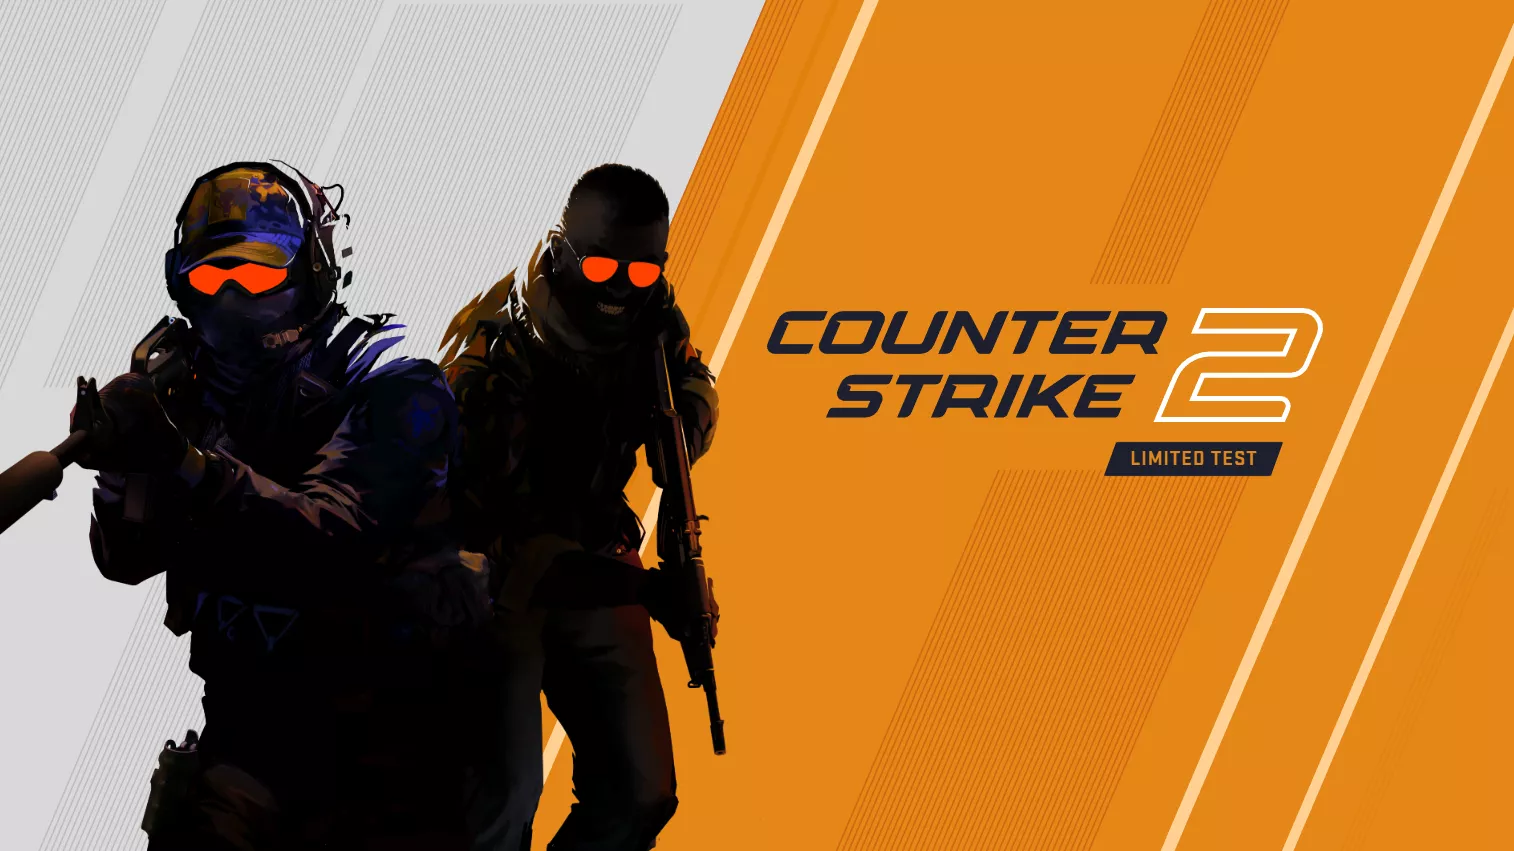 Counter-Strike 2 wurde offiziell vorgestellt und soll diesen Sommer erscheinen Heropic